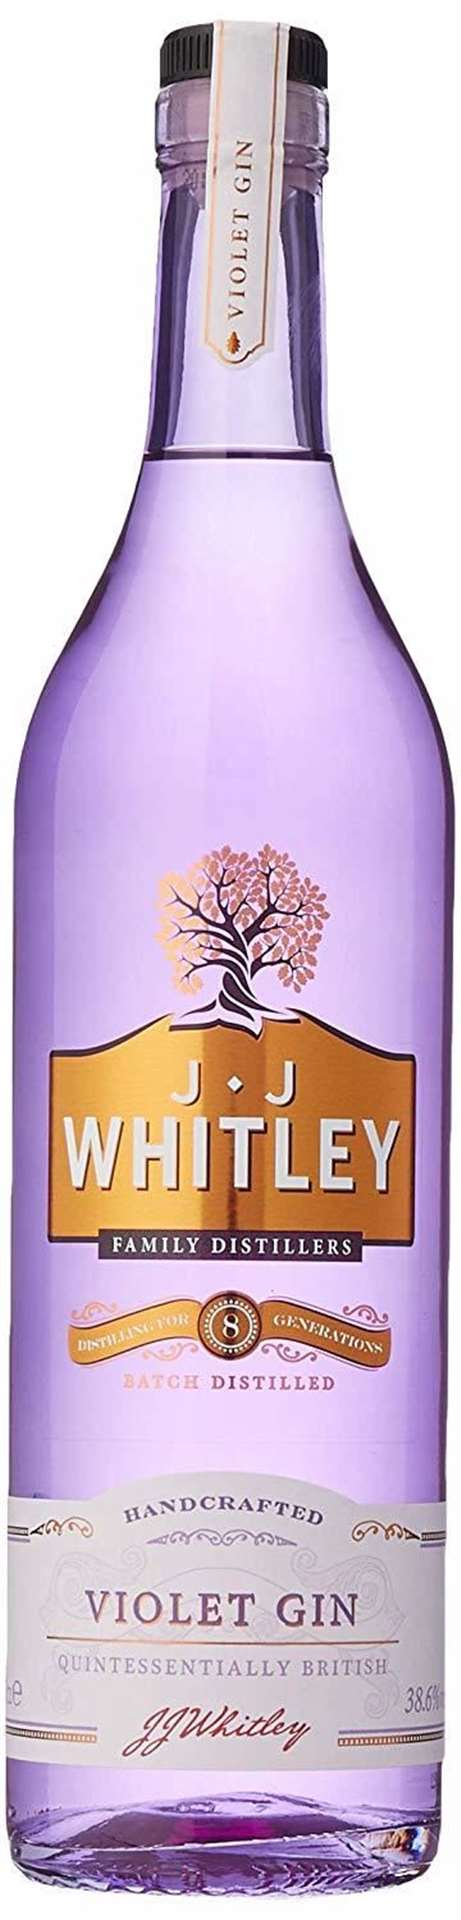 JJ Whitley Violet Gin